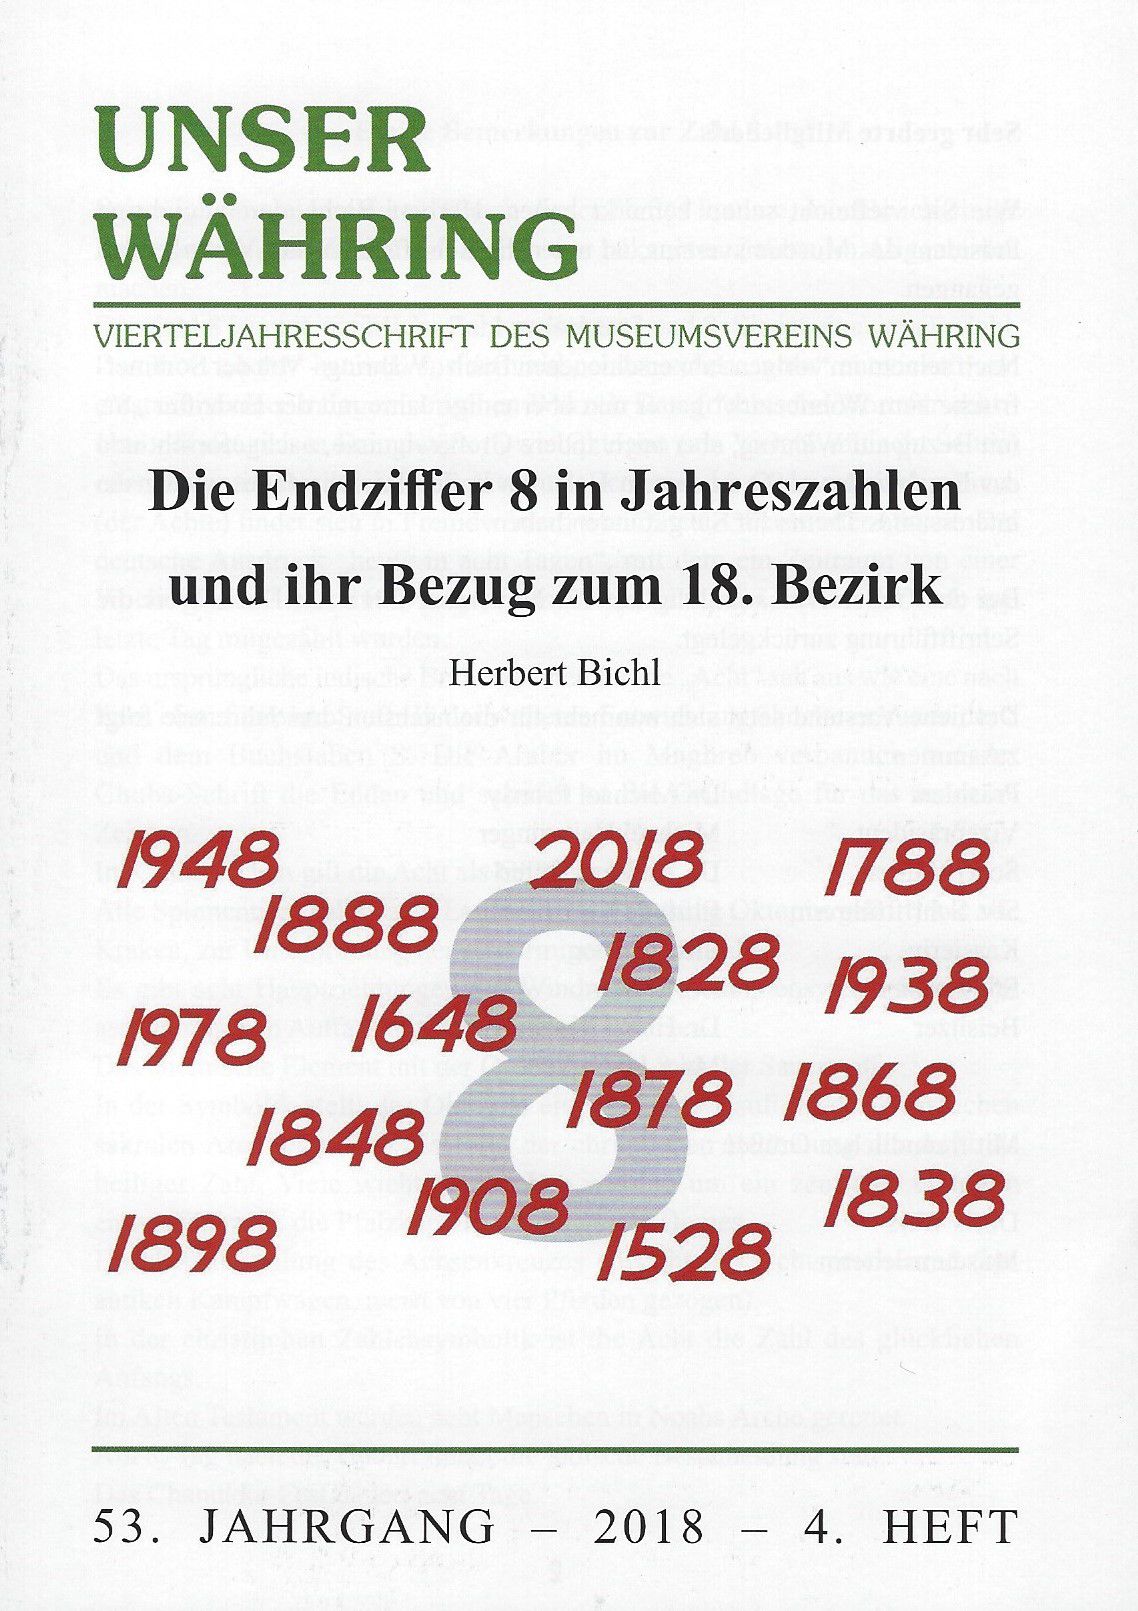 Publikation: Die Endziffer 8 in Jahreszahlen und ihr Bezug zum 18. Bezirk. Bezirksmuseum Währing